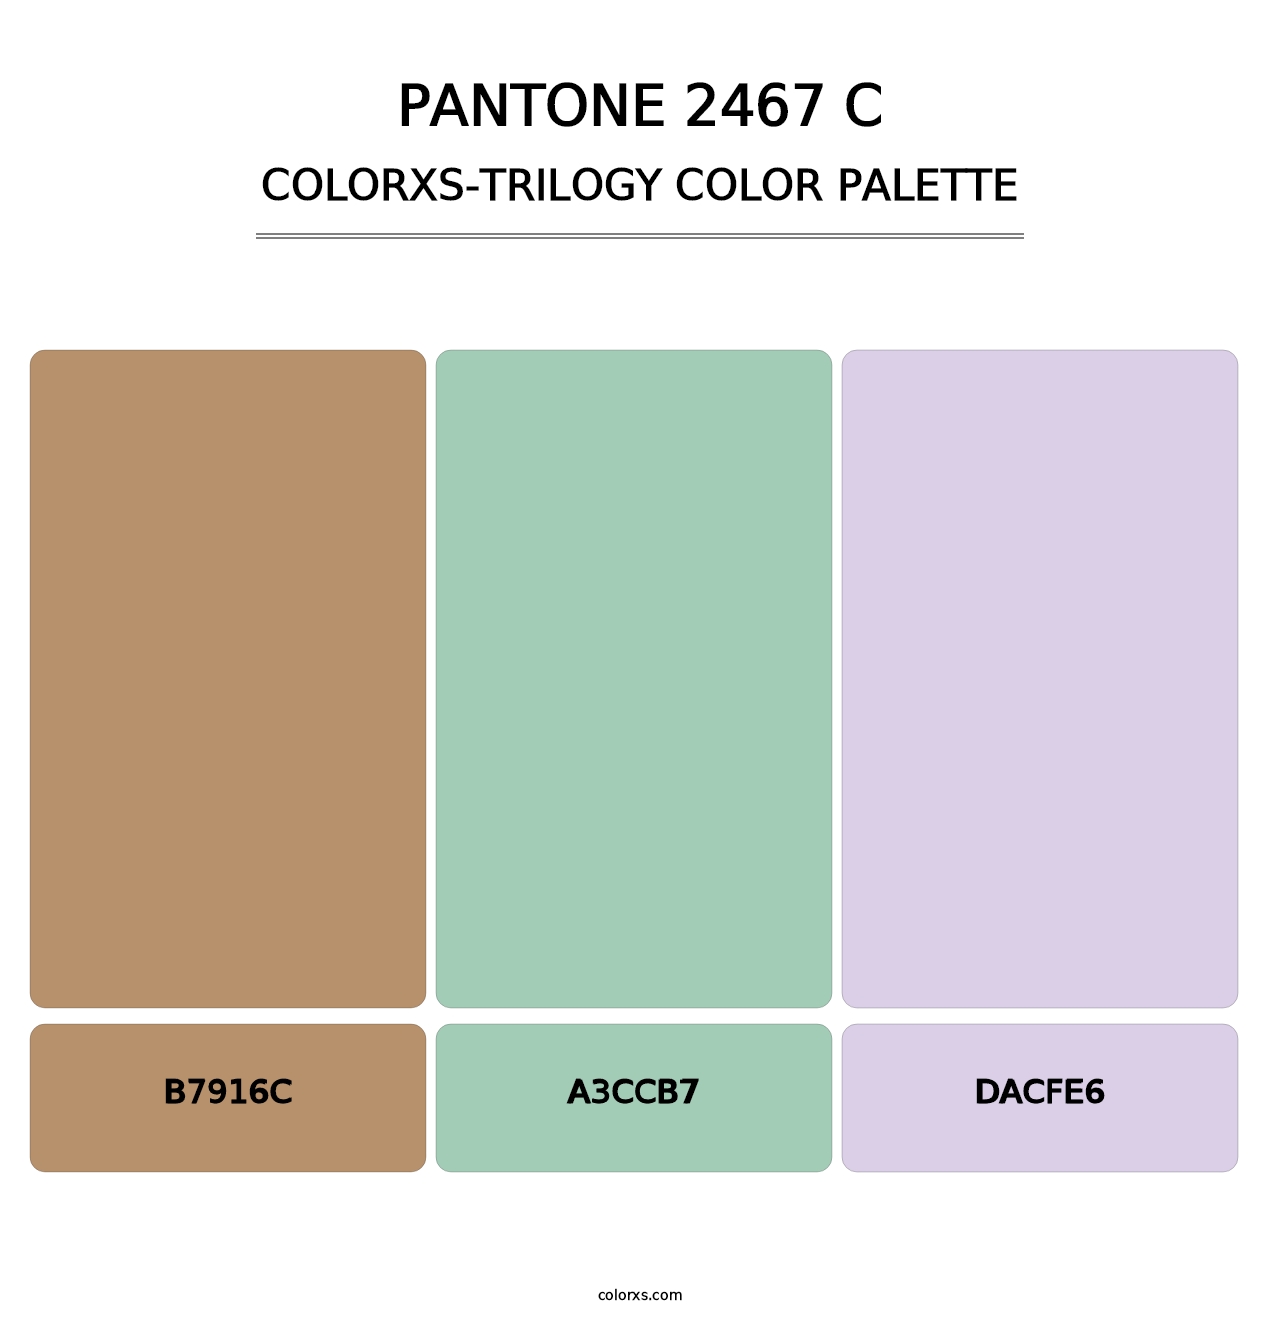 PANTONE 2467 C - Colorxs Trilogy Palette